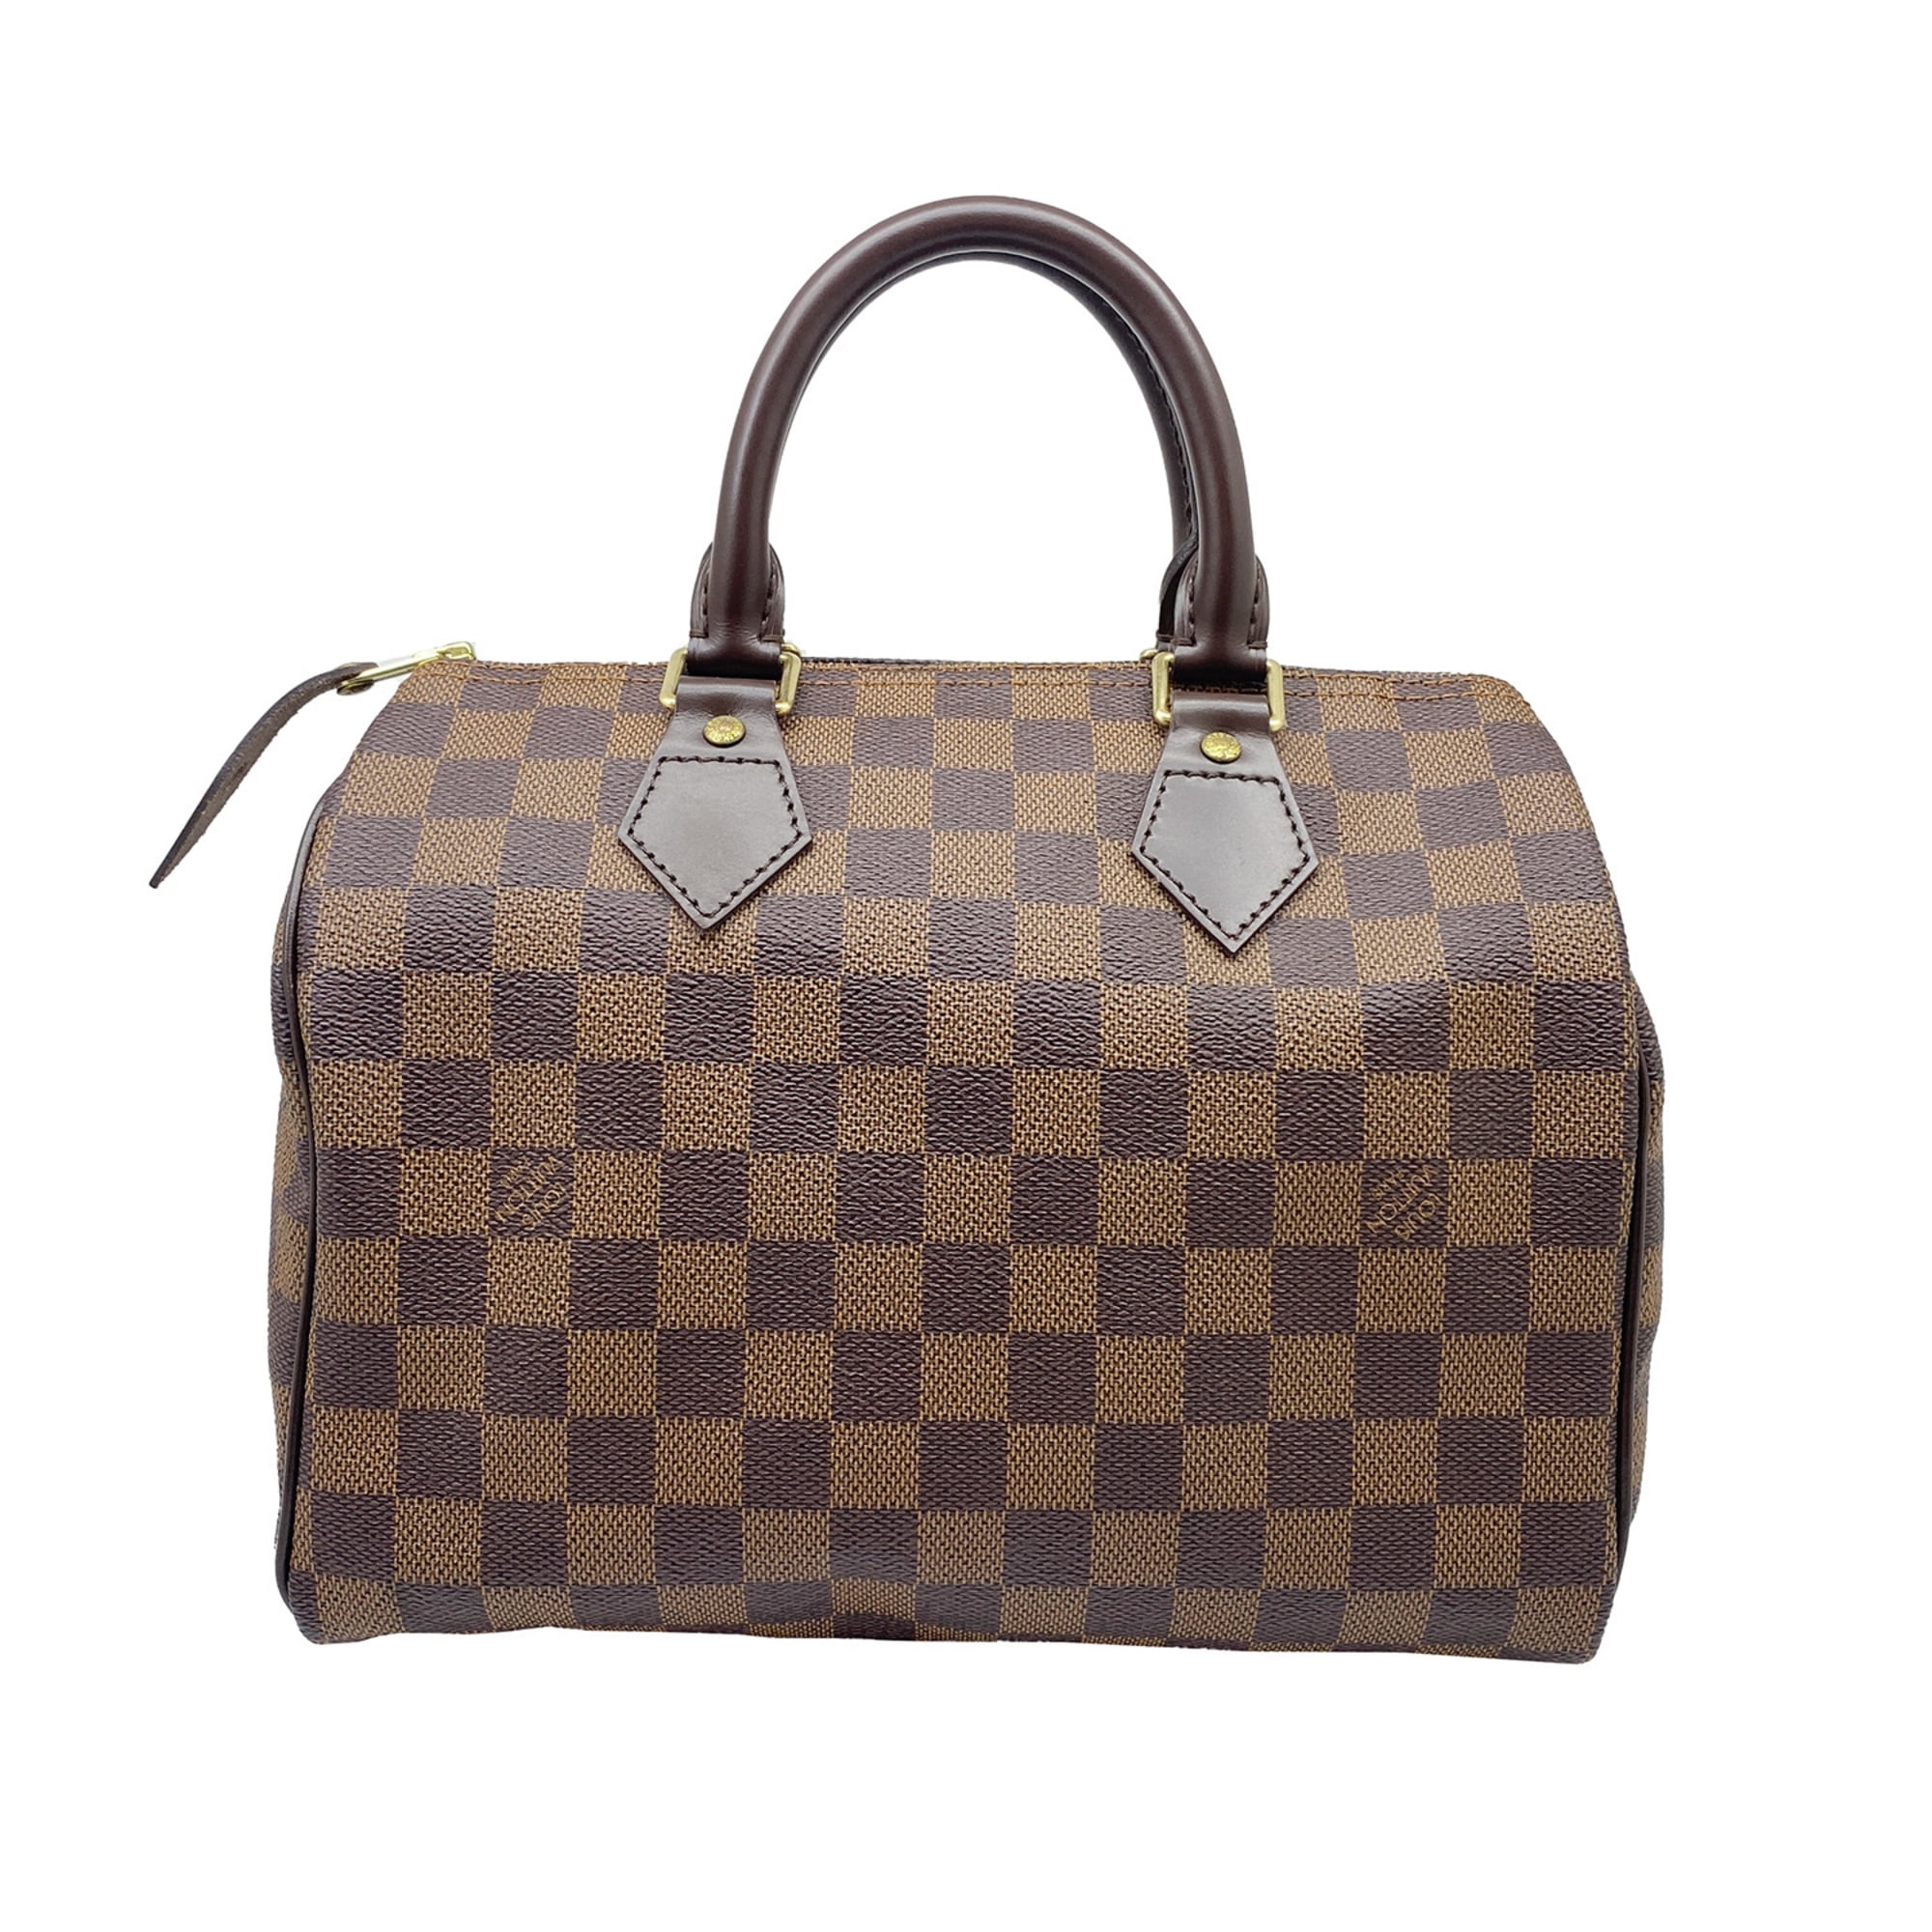 Authenticated Used LOUIS VUITTON Louis Vuitton Handbag Damier